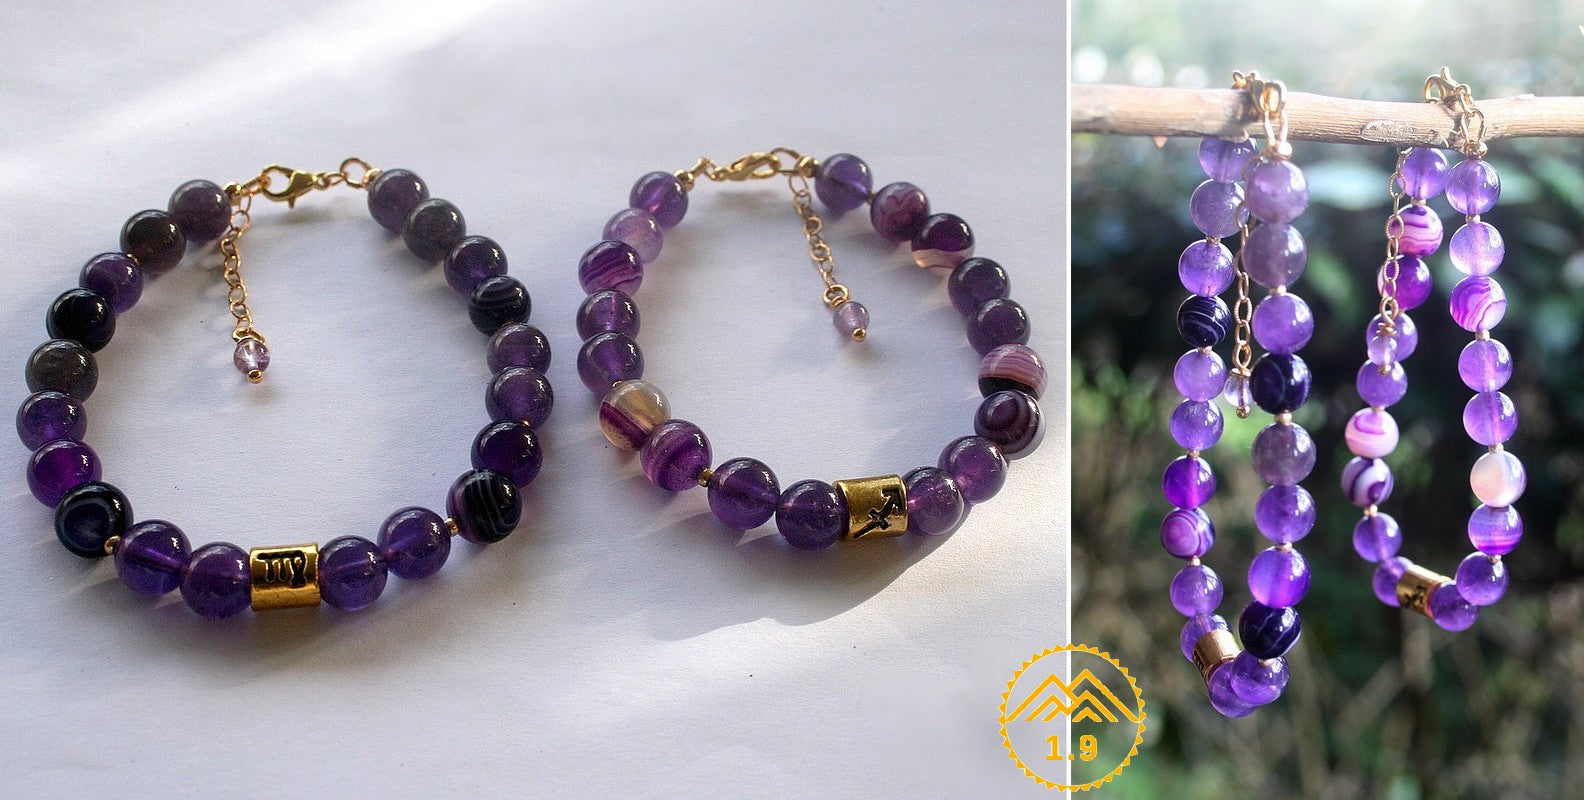 Bracelet astro vierge sur mesure avec perles agate violette et améthyste. Bracelet astro sagittaire personnalisé avec pierres améthyste et agate violette, de la marque 1point9